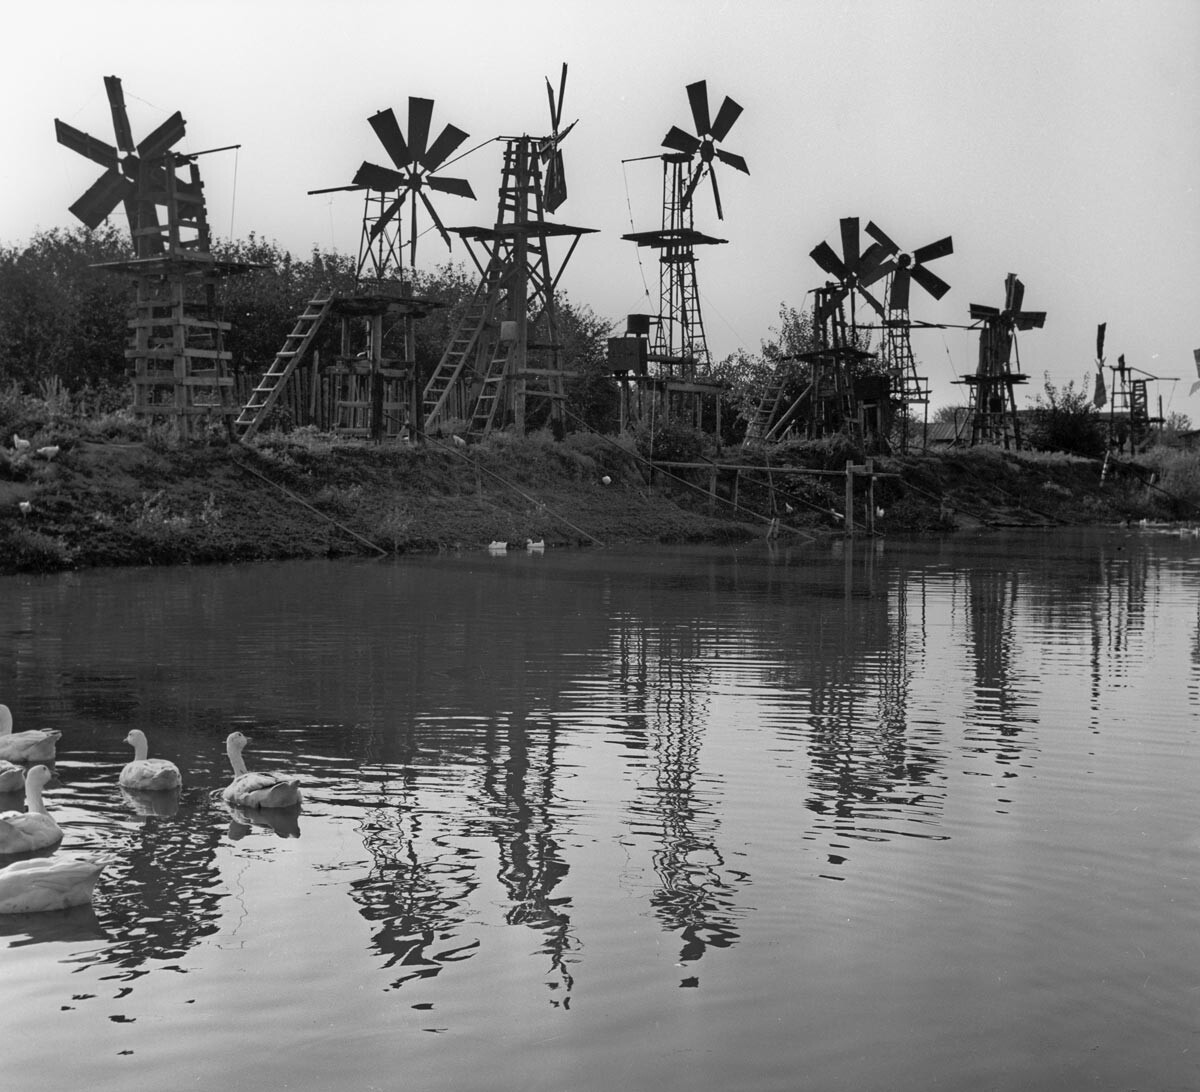 Астрахань. Ветрогенератори на обали језера помоћу чије енергије се вода доводи до наводњаваних подручја пољопривредног земљишта, 1969.